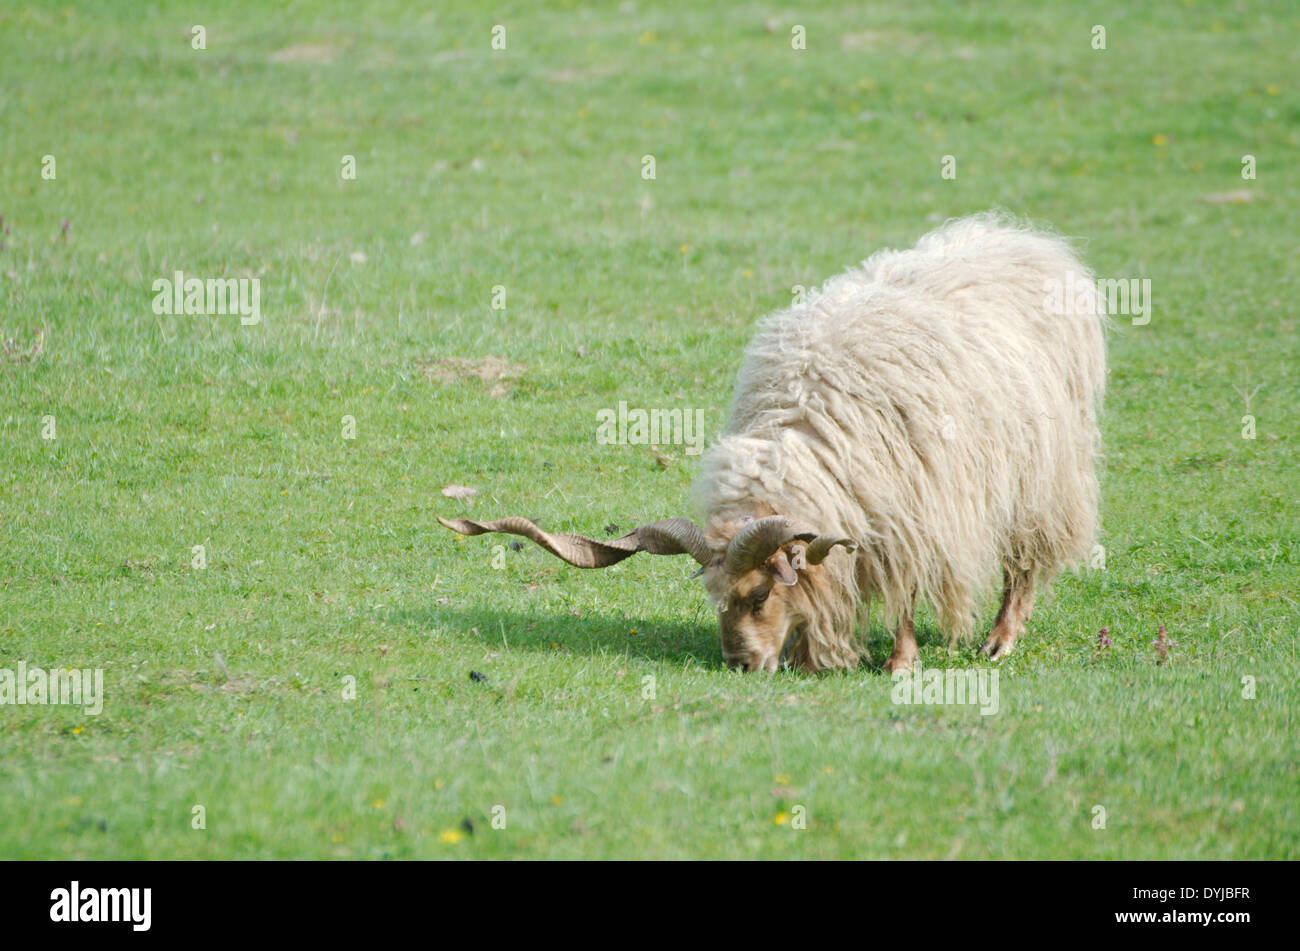 Hungarian Racka Sheep Grazing in a Green Field Stock Photo